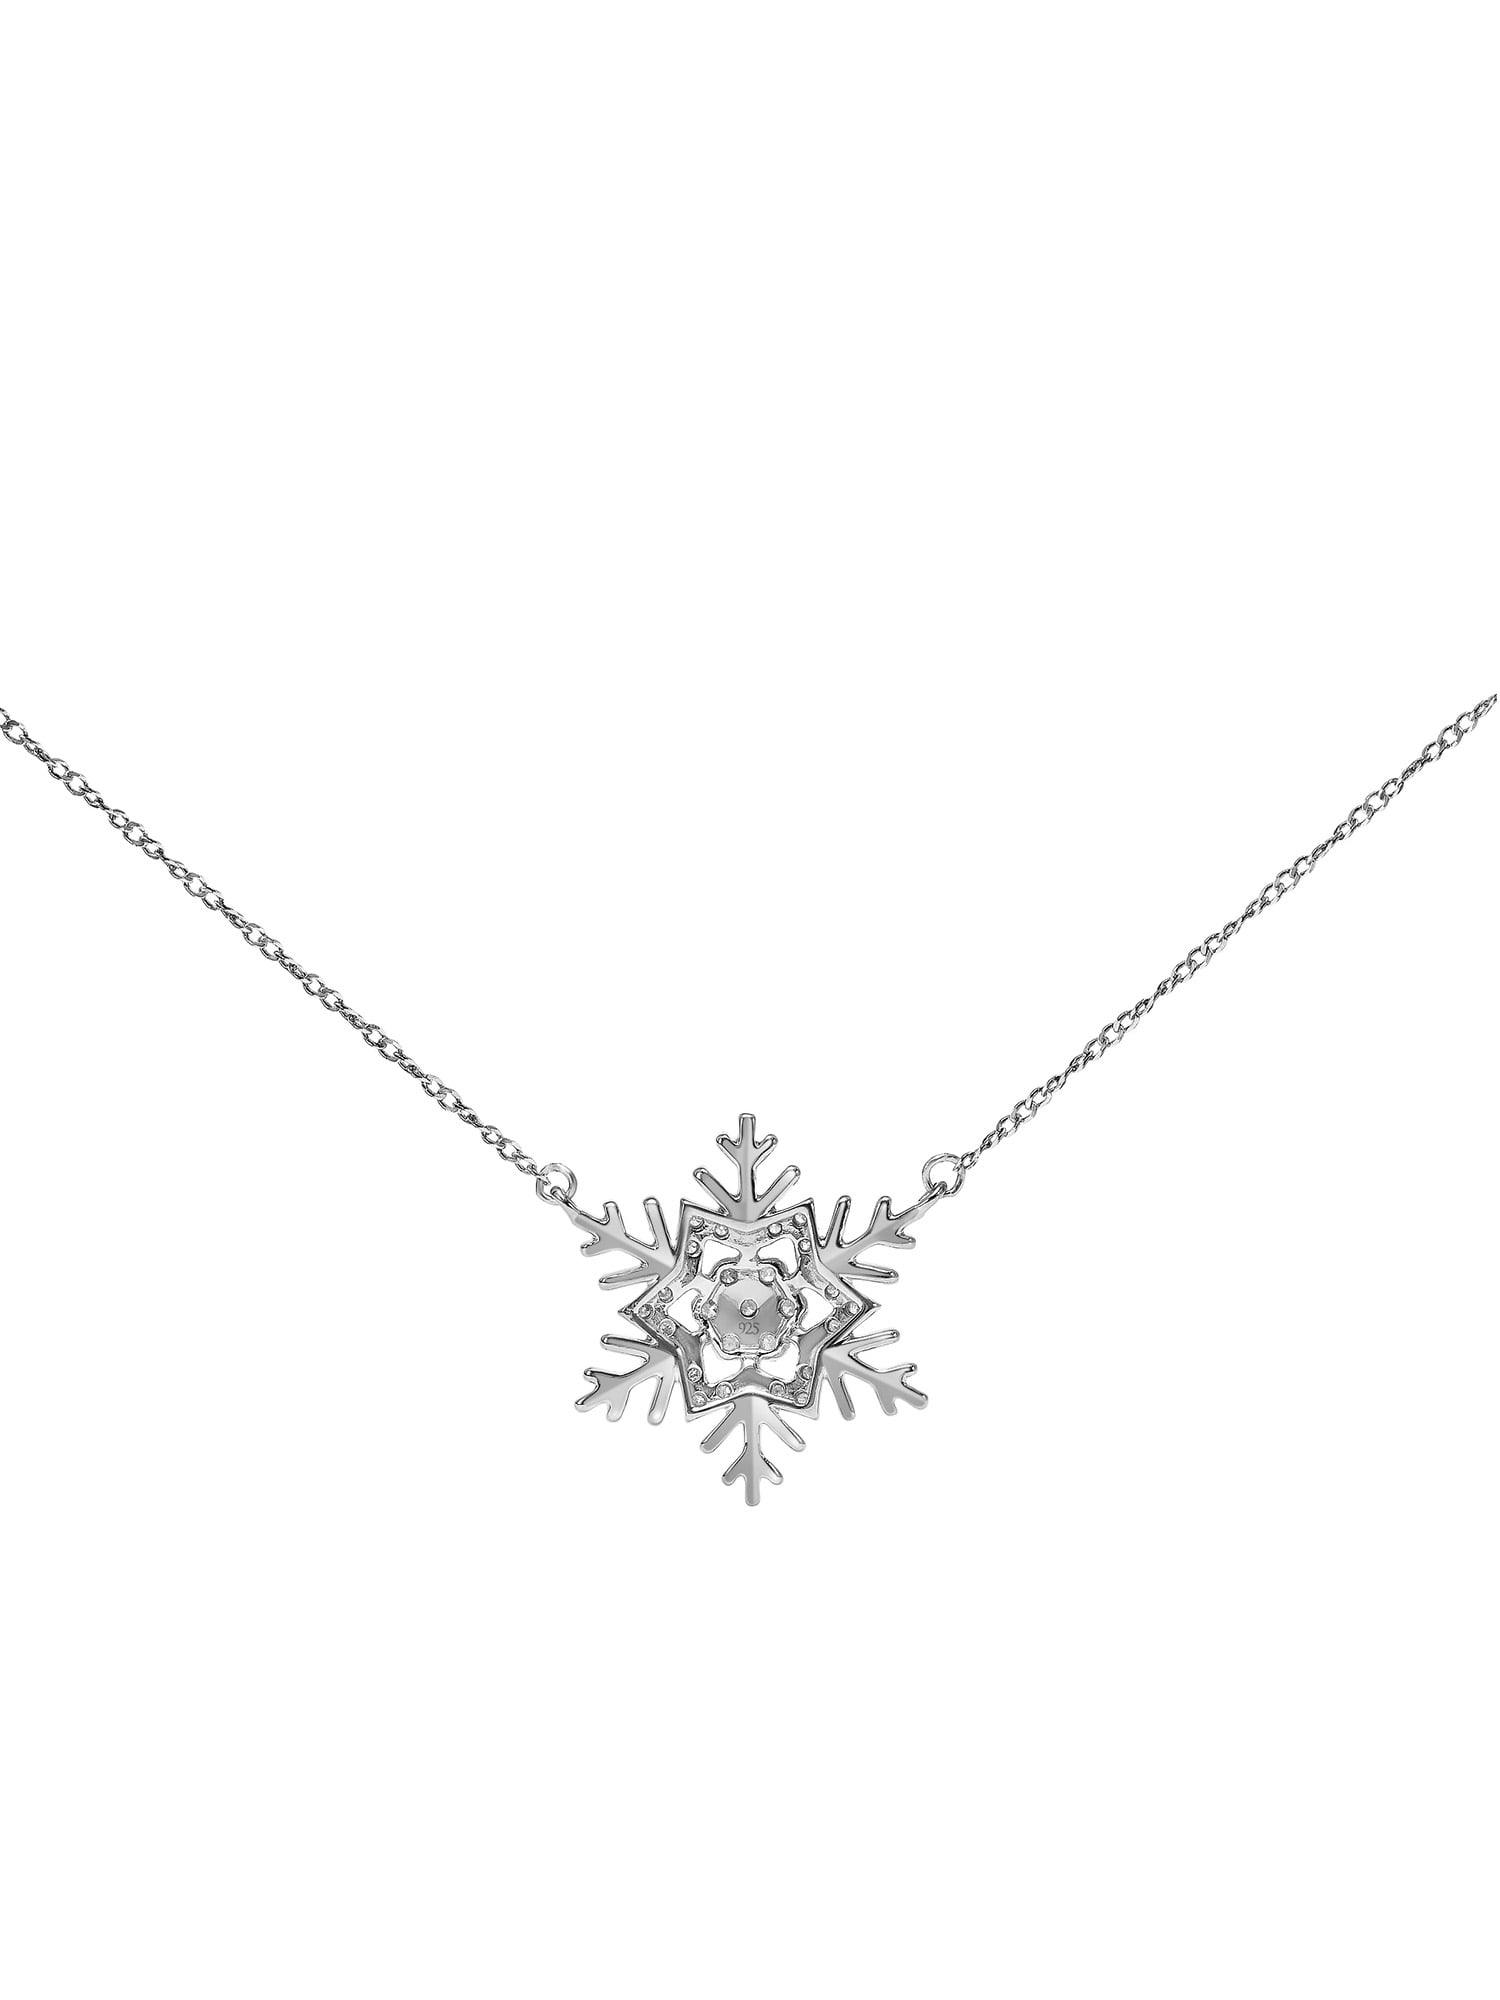 Blue & White Diamond Snowflake Necklace 14k White Gold 0.29ct - AZ3485